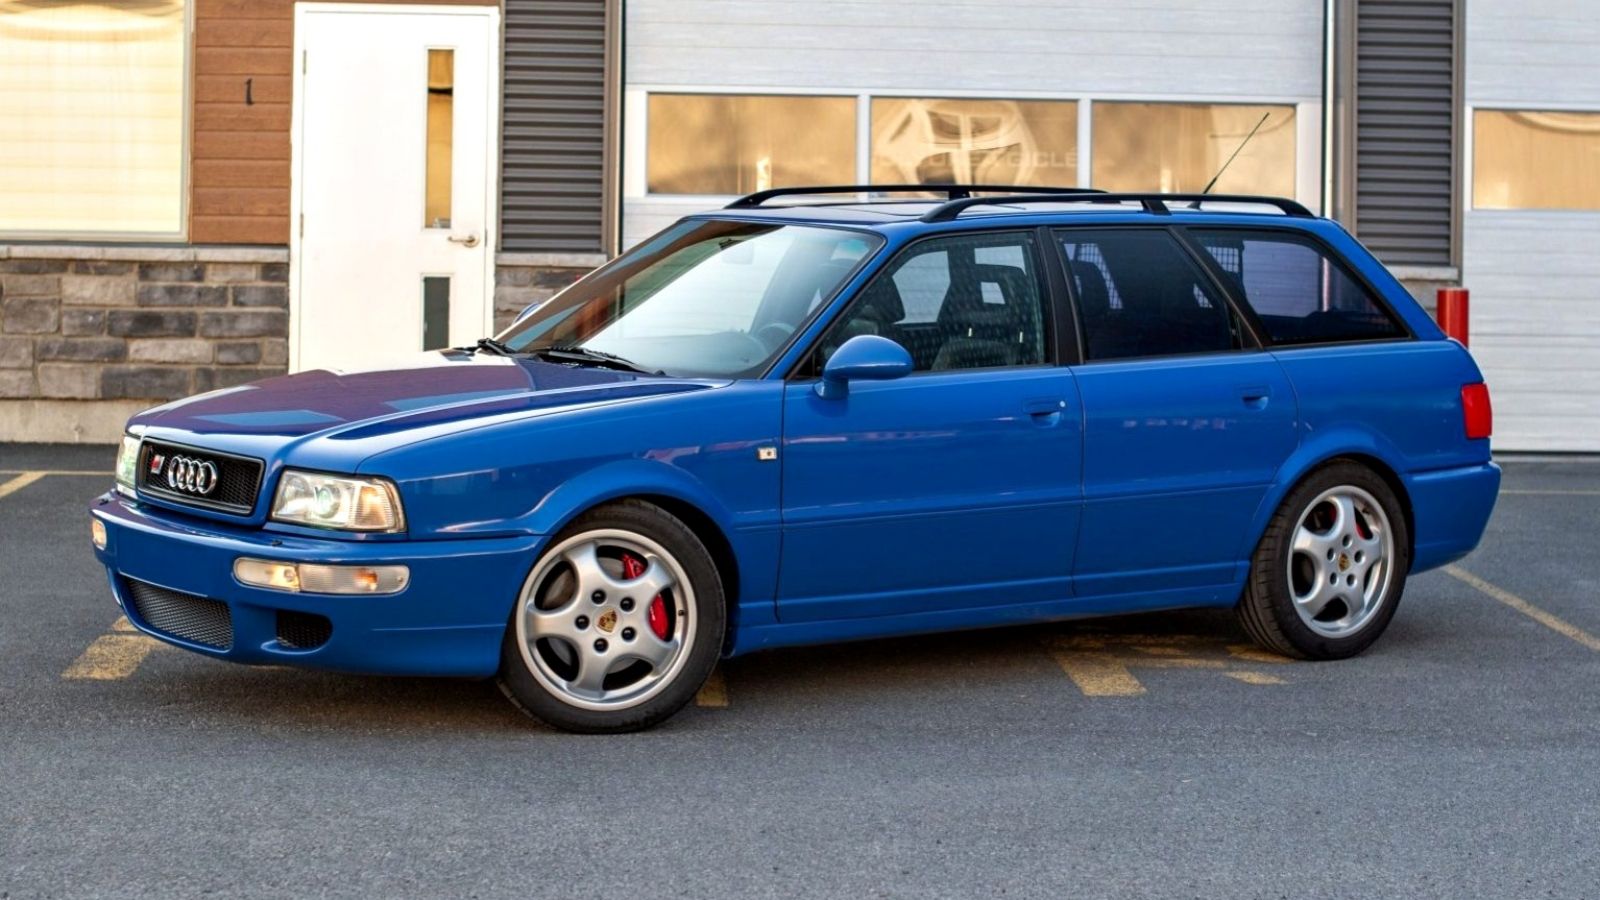 Blue Aud RS2 Avant